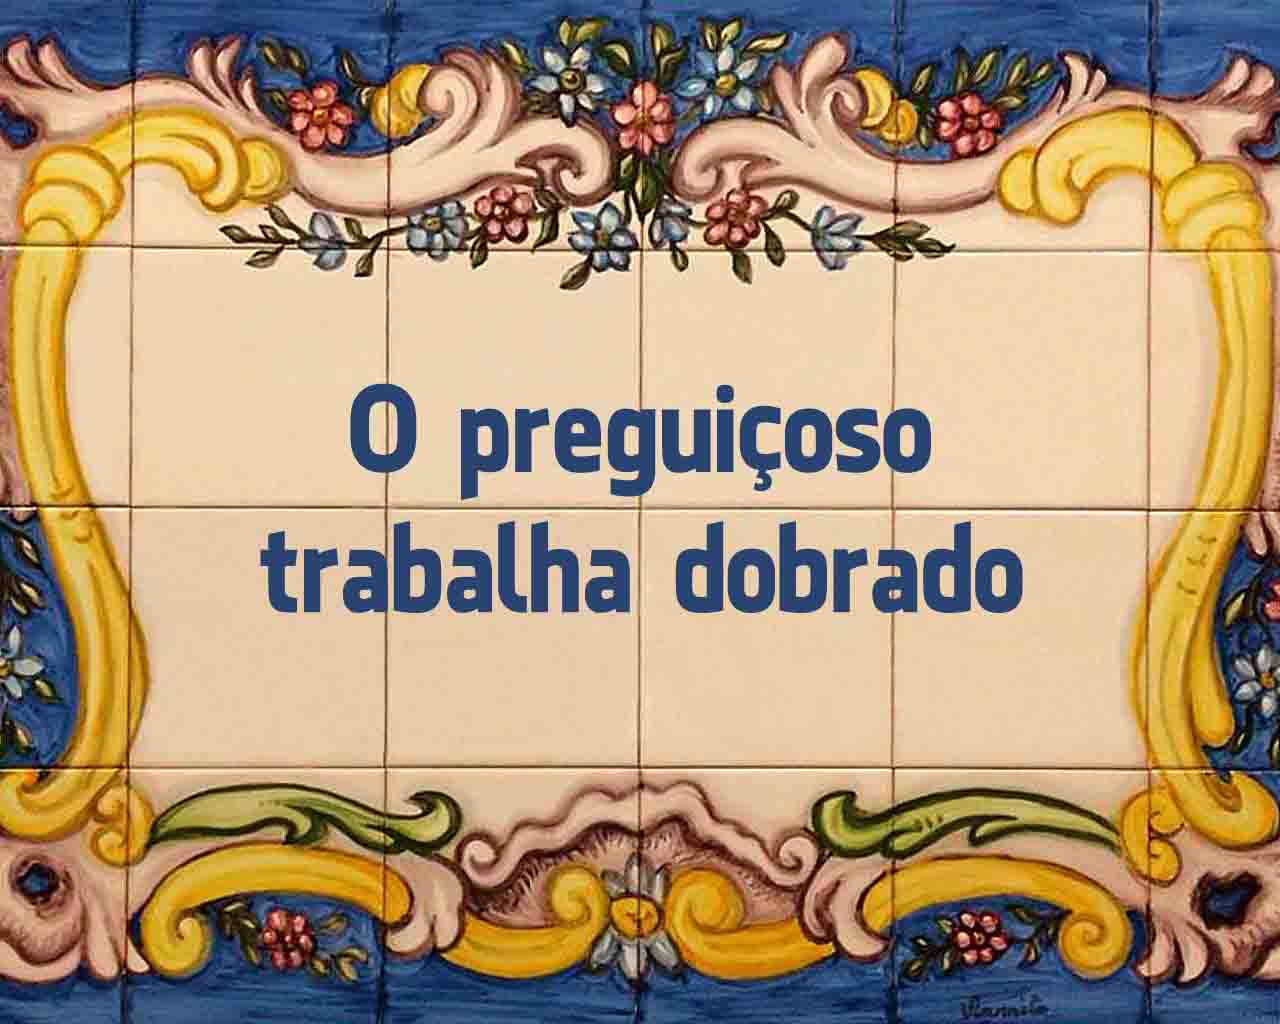 melhores provérbios portugueses